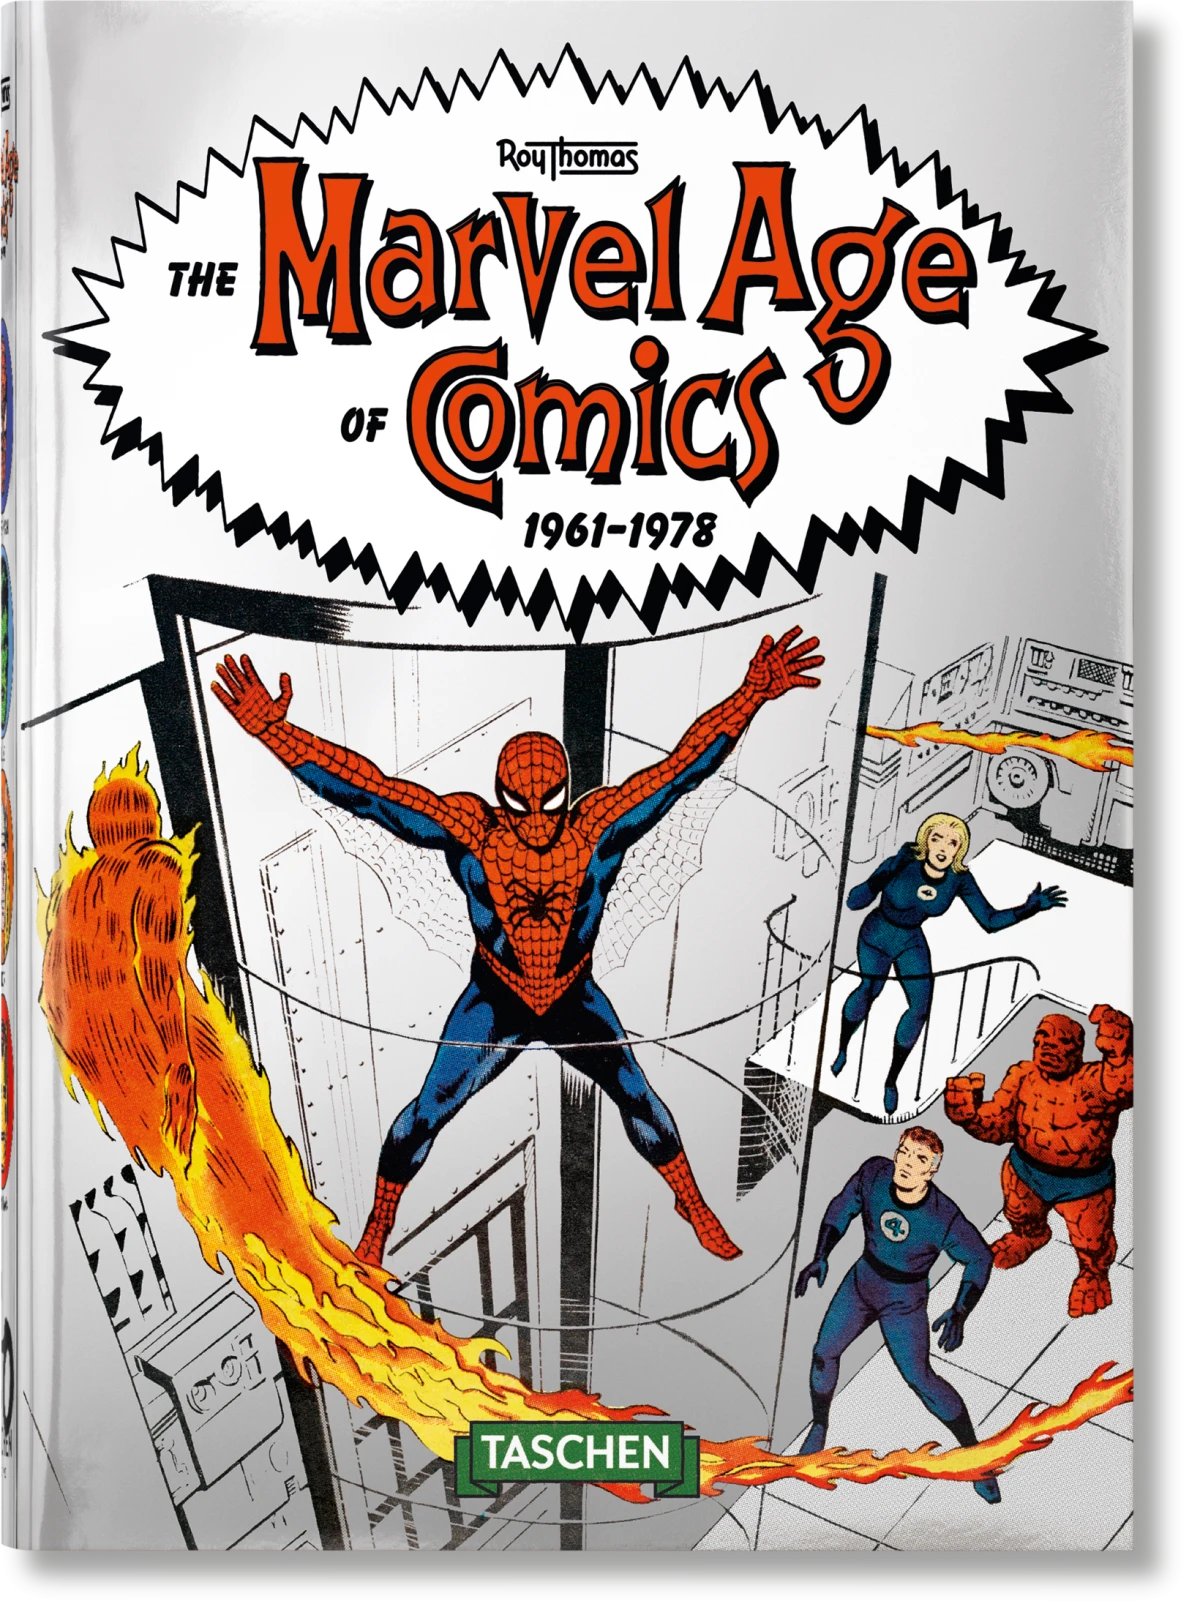 Marvel age comics